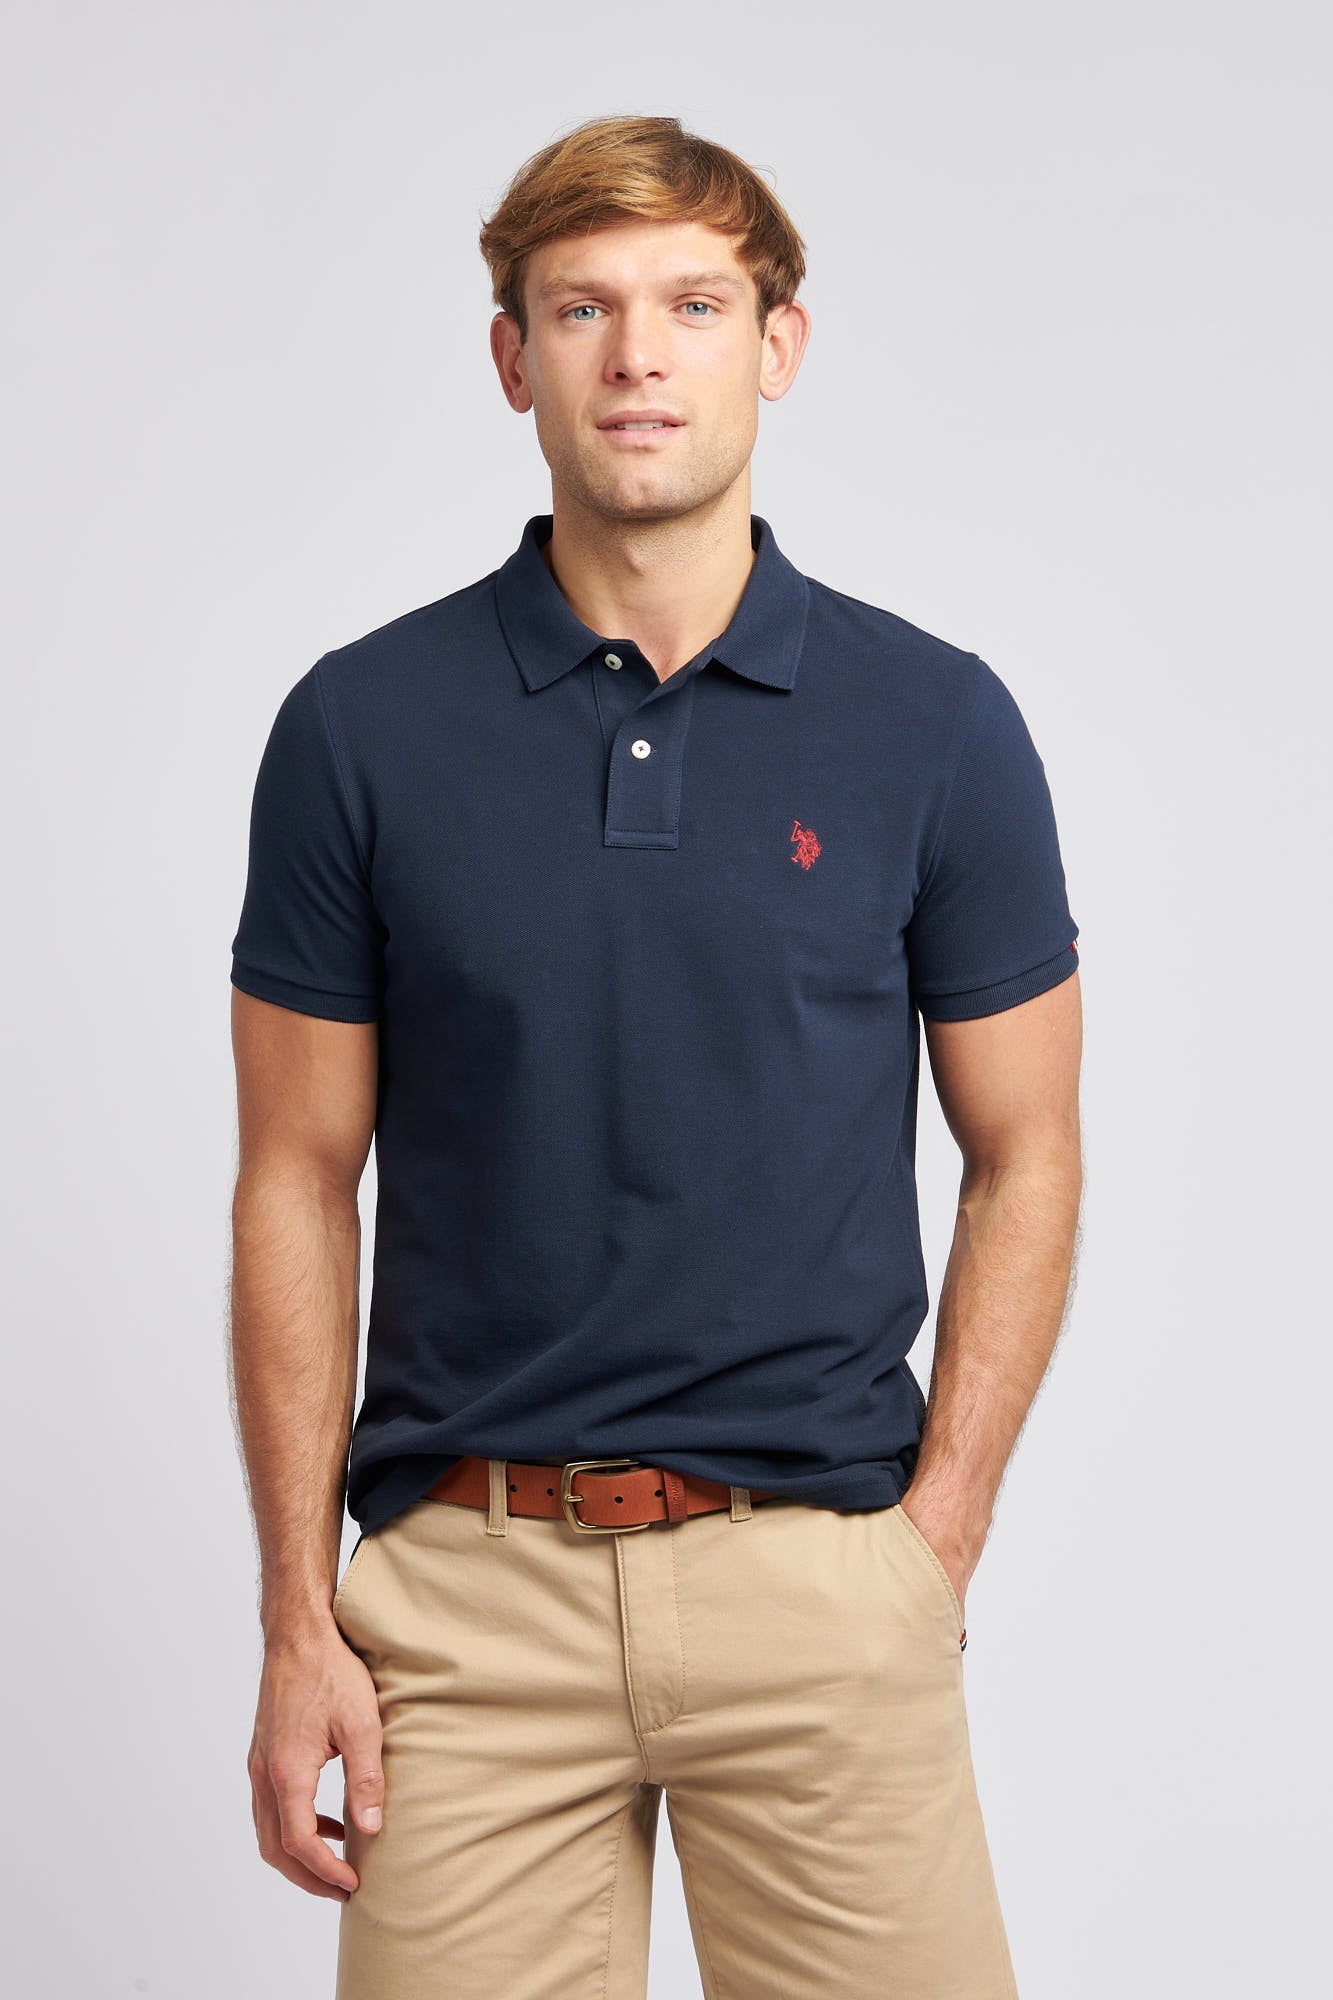 U.S. Polo Assn. Mens Pique Polo Shirt in Dark Sapphire Navy / Haute Red DHM